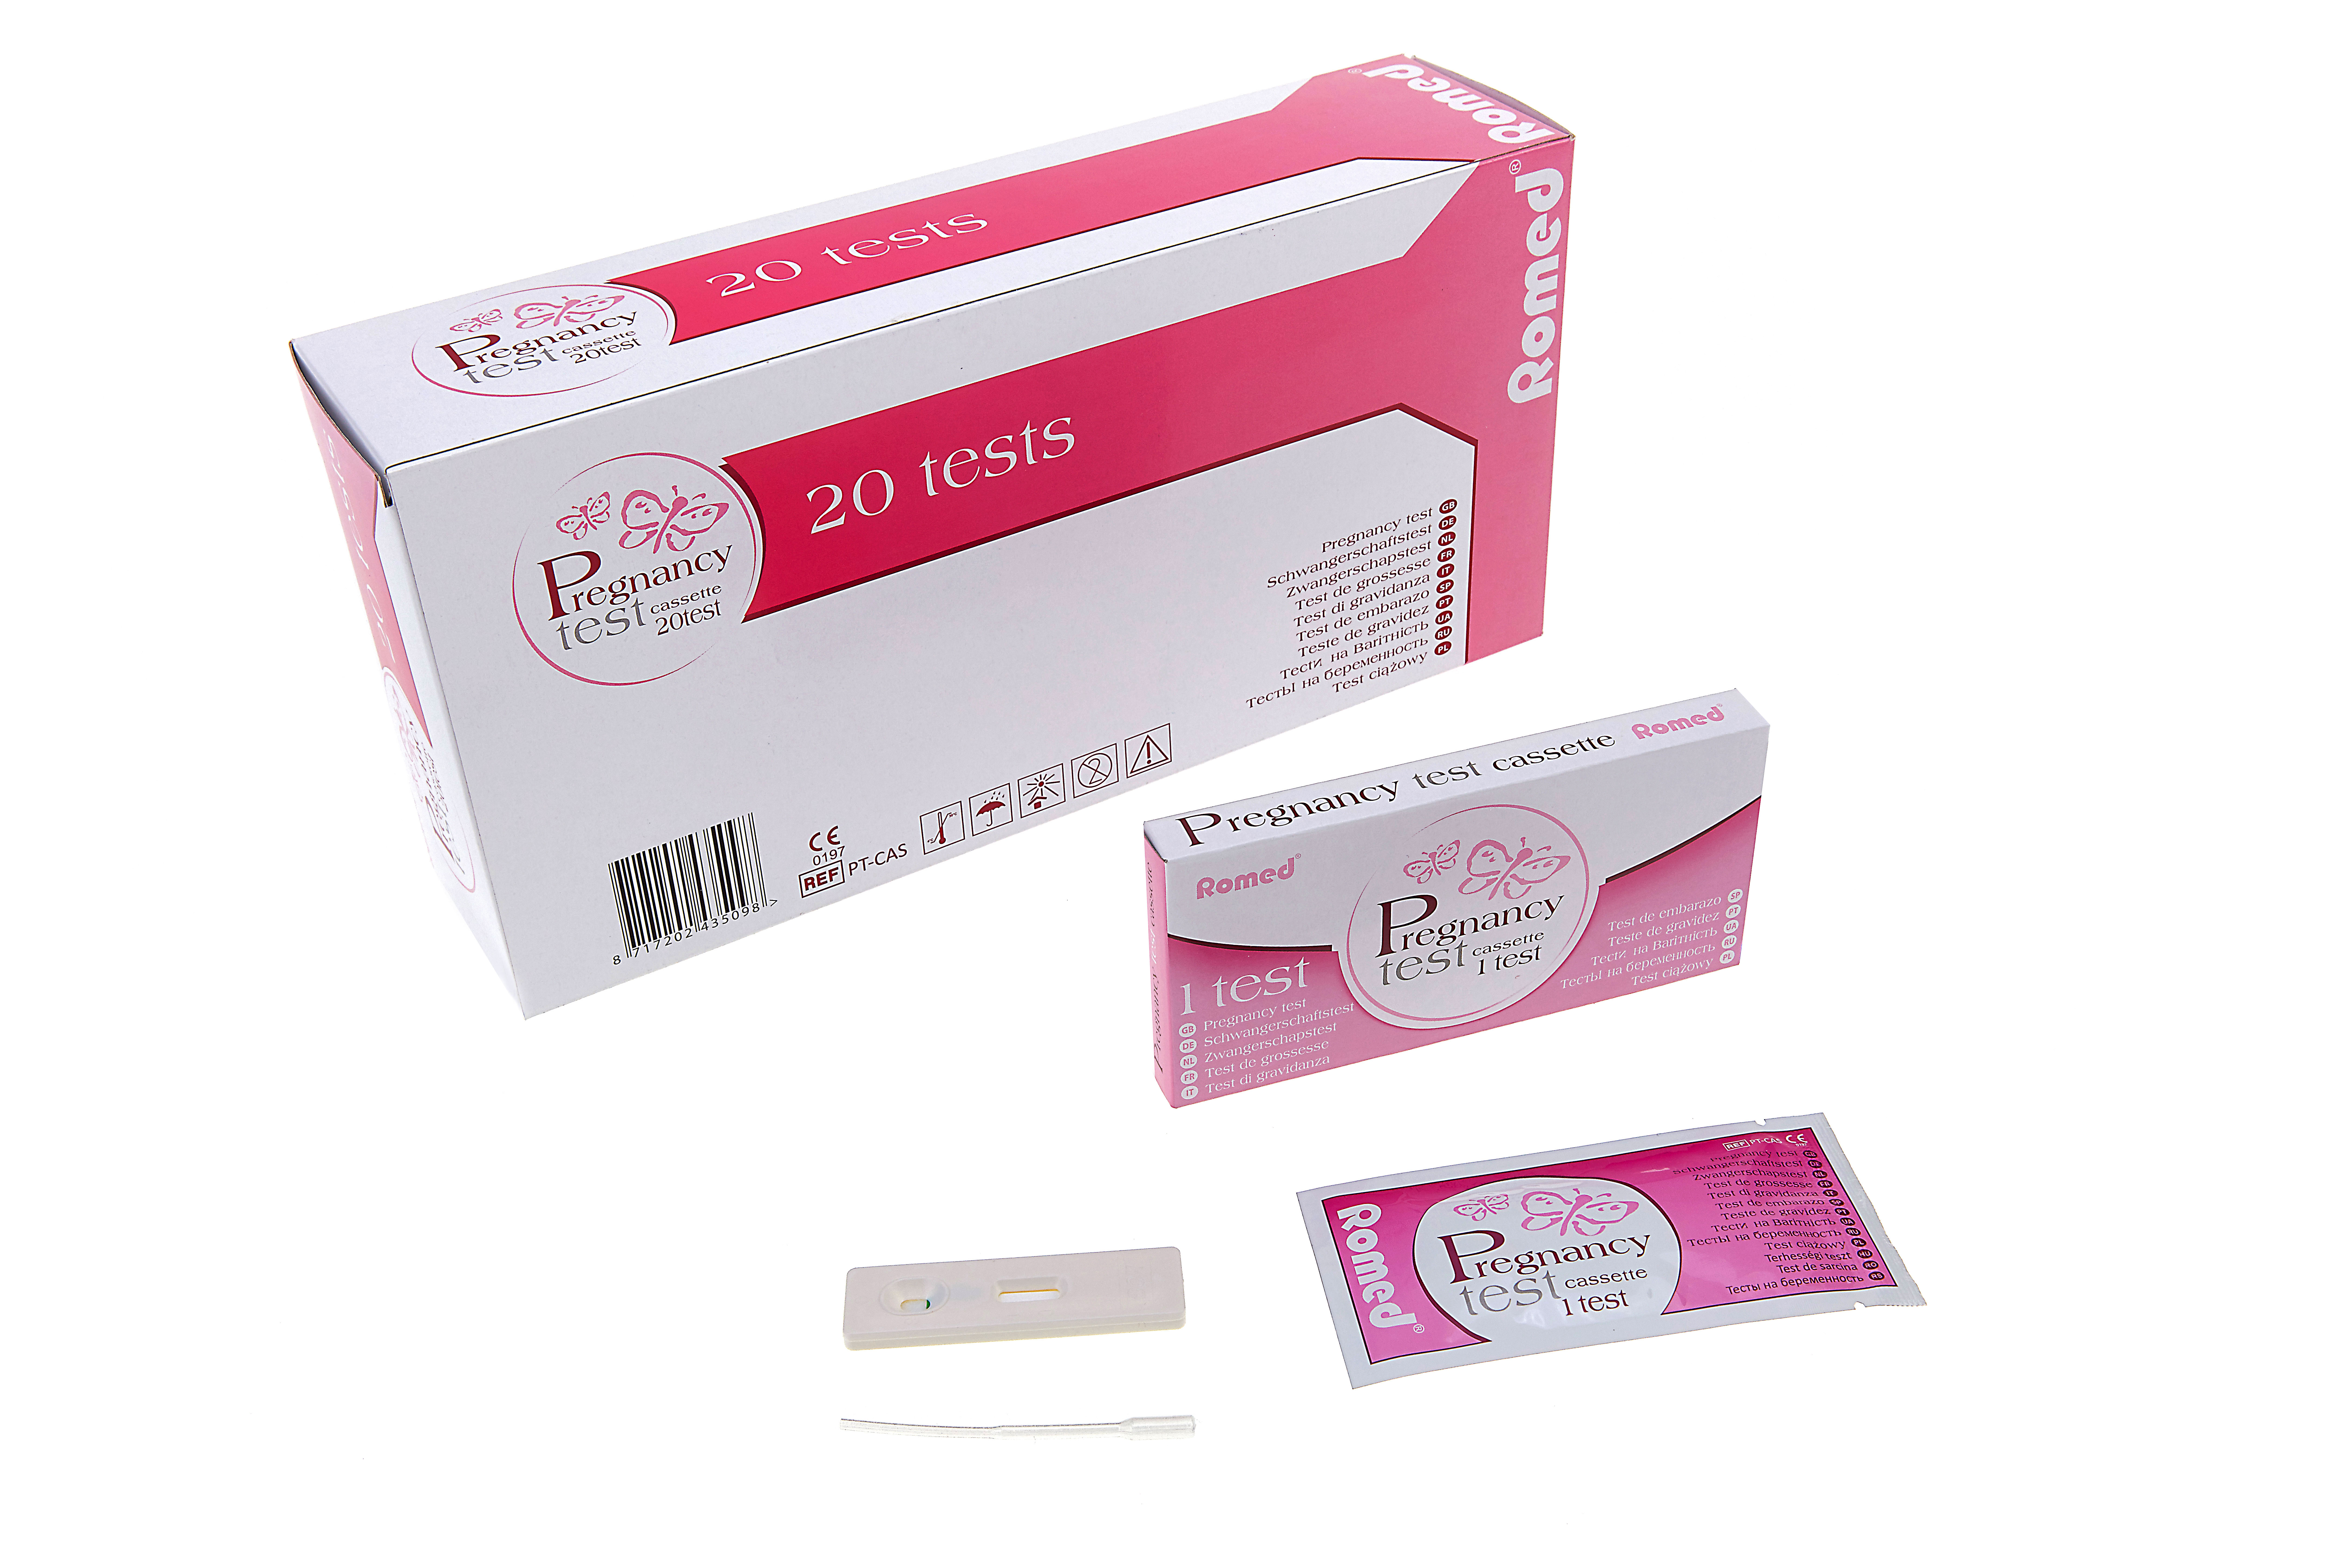 PT-CAS Tests de grossesse Romed, de type cassette, conditionnés individuellement dans une boîte, 20 unités par sac plastique, 25 x 20 unités = 500 unités par carton.